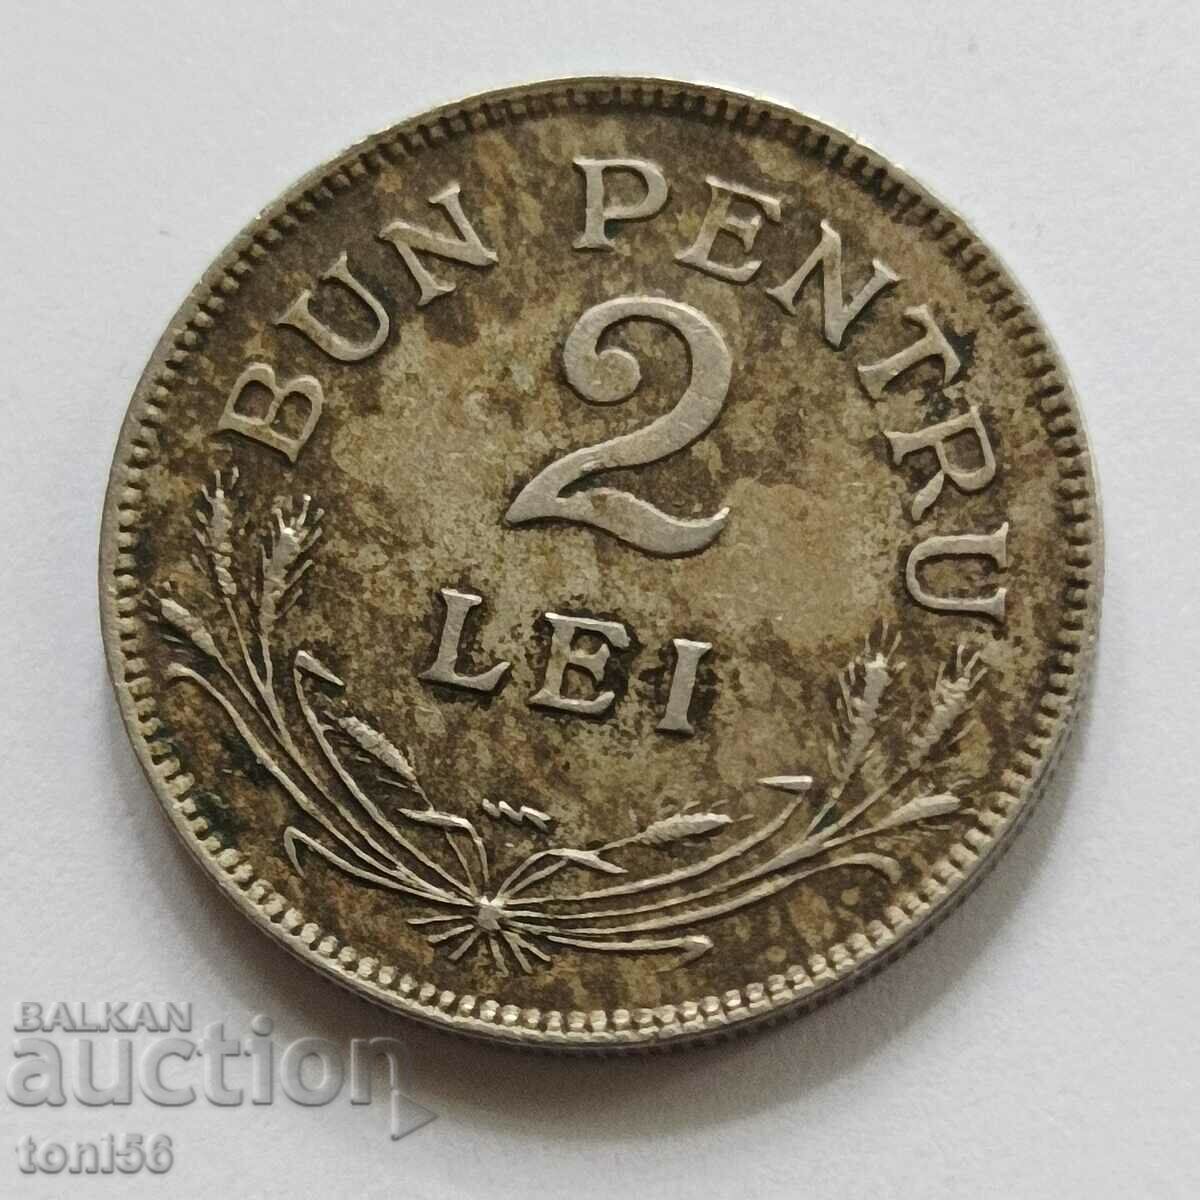 Romania 2 lei 1924, με γραμμή